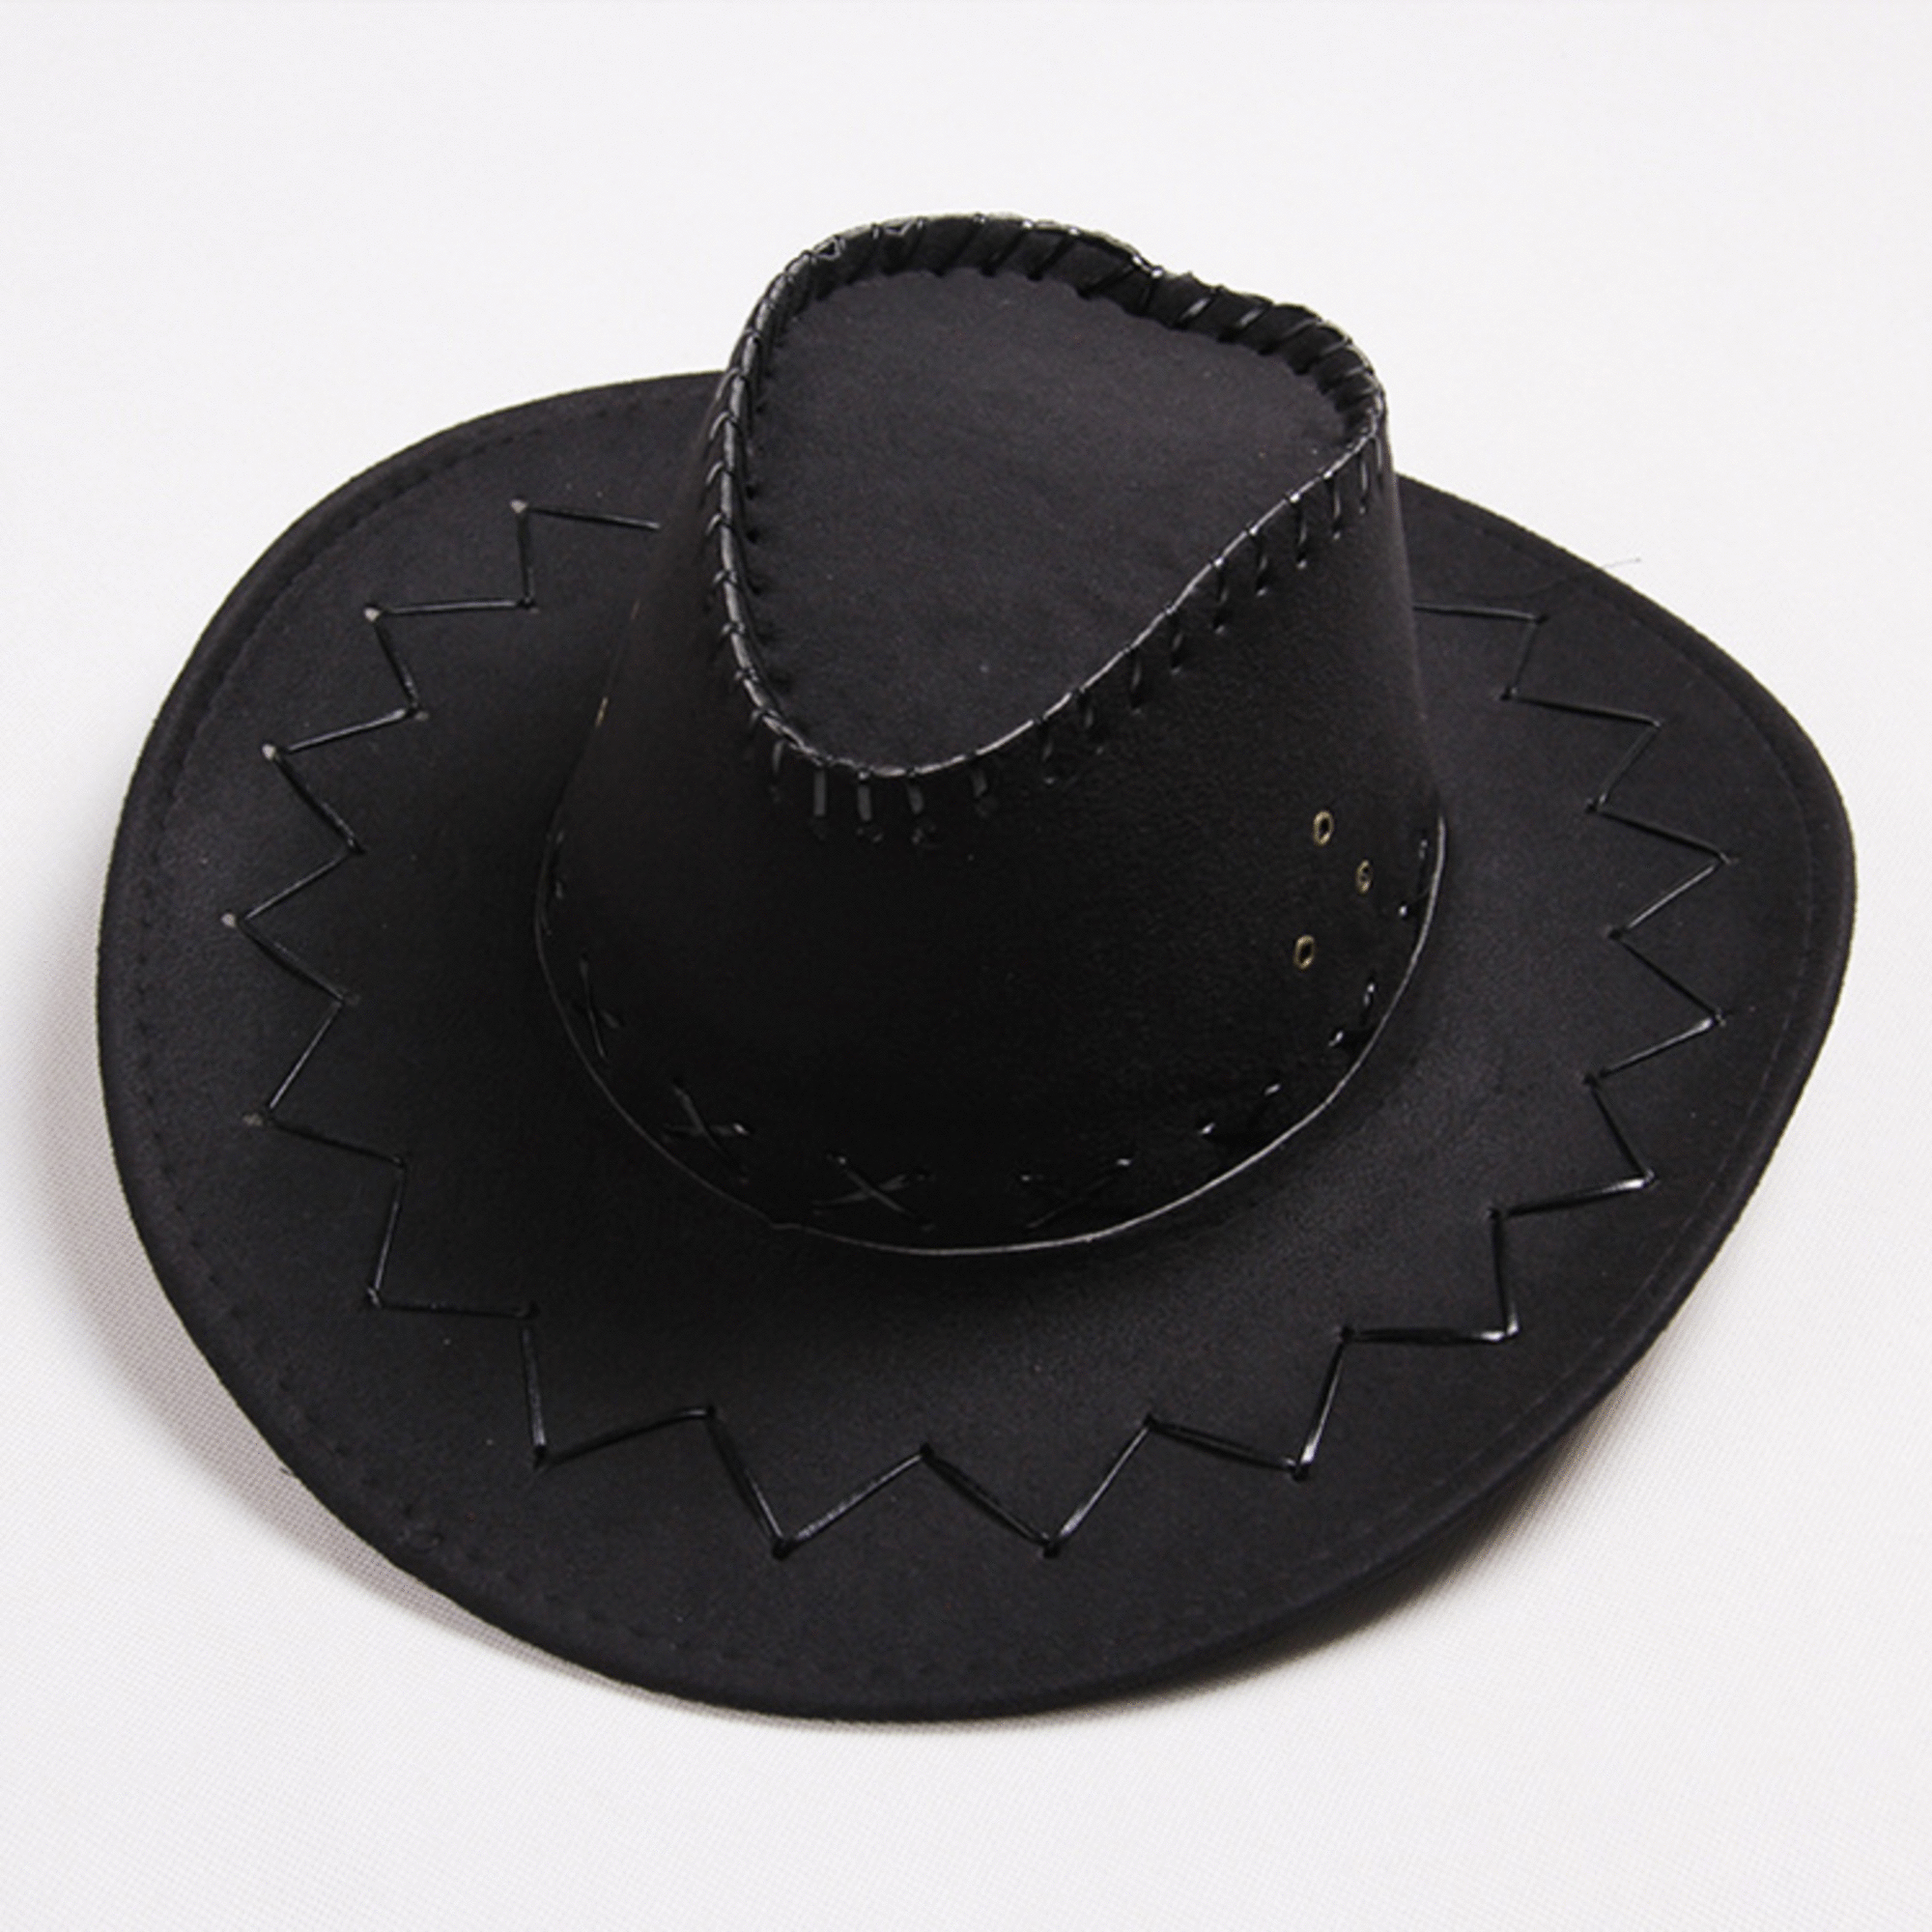 Western Cowboyhut mit Muster, schwarz